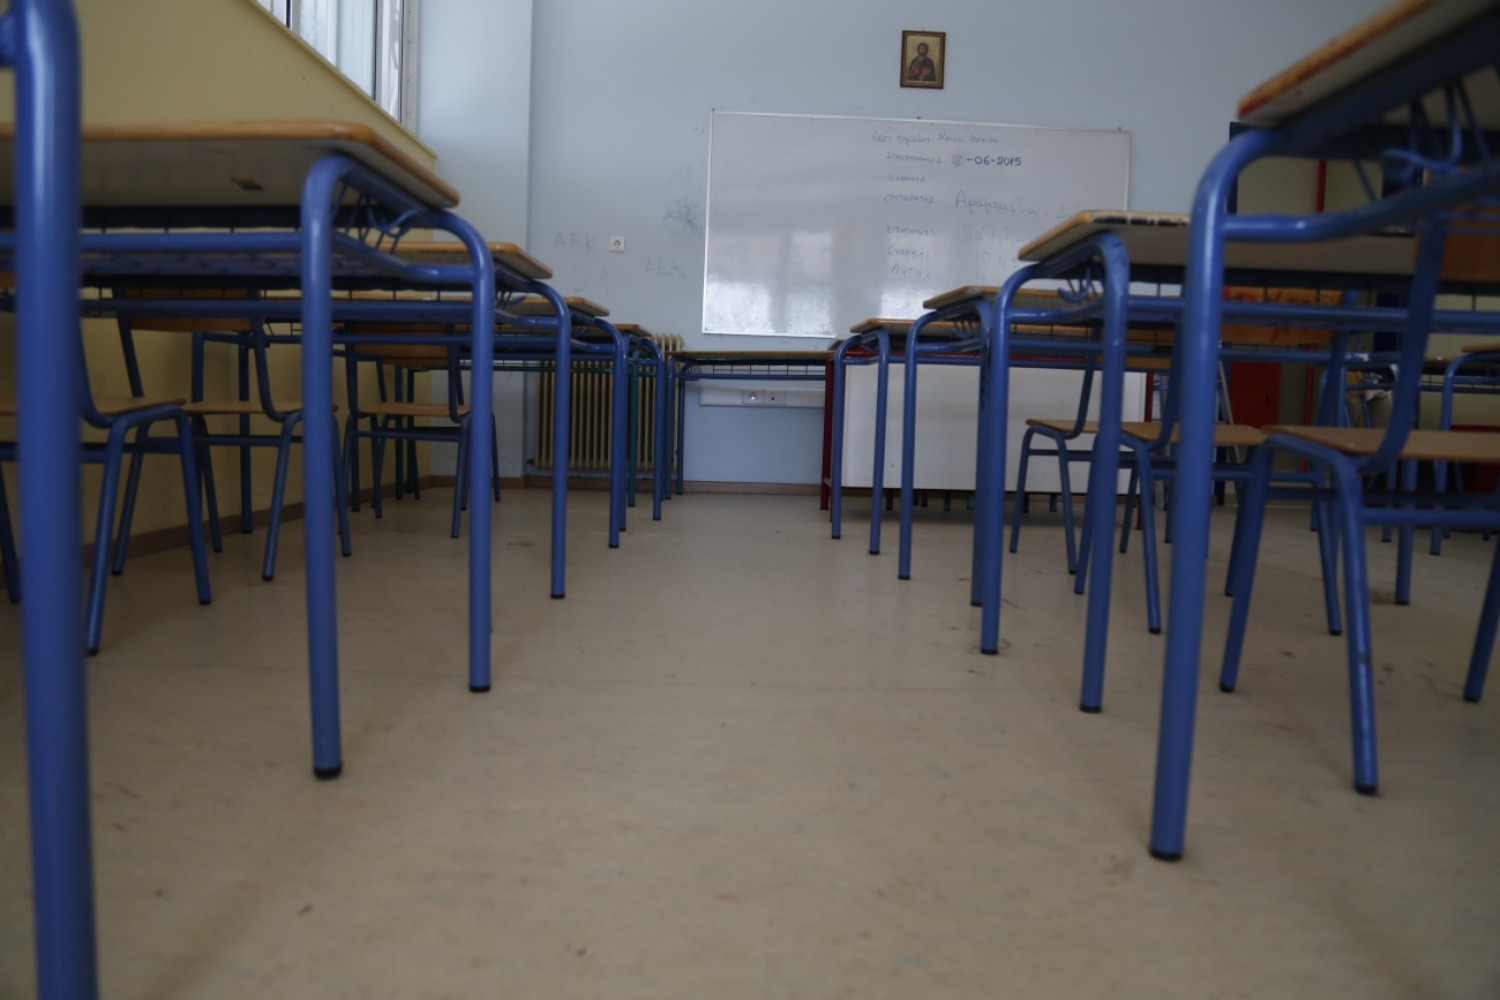 Δήμαρχος Βύρωνα για τον ξυλοδαρμό 17χρονου: Η βία δεν έχει καμία θέση στα σχολεία μας